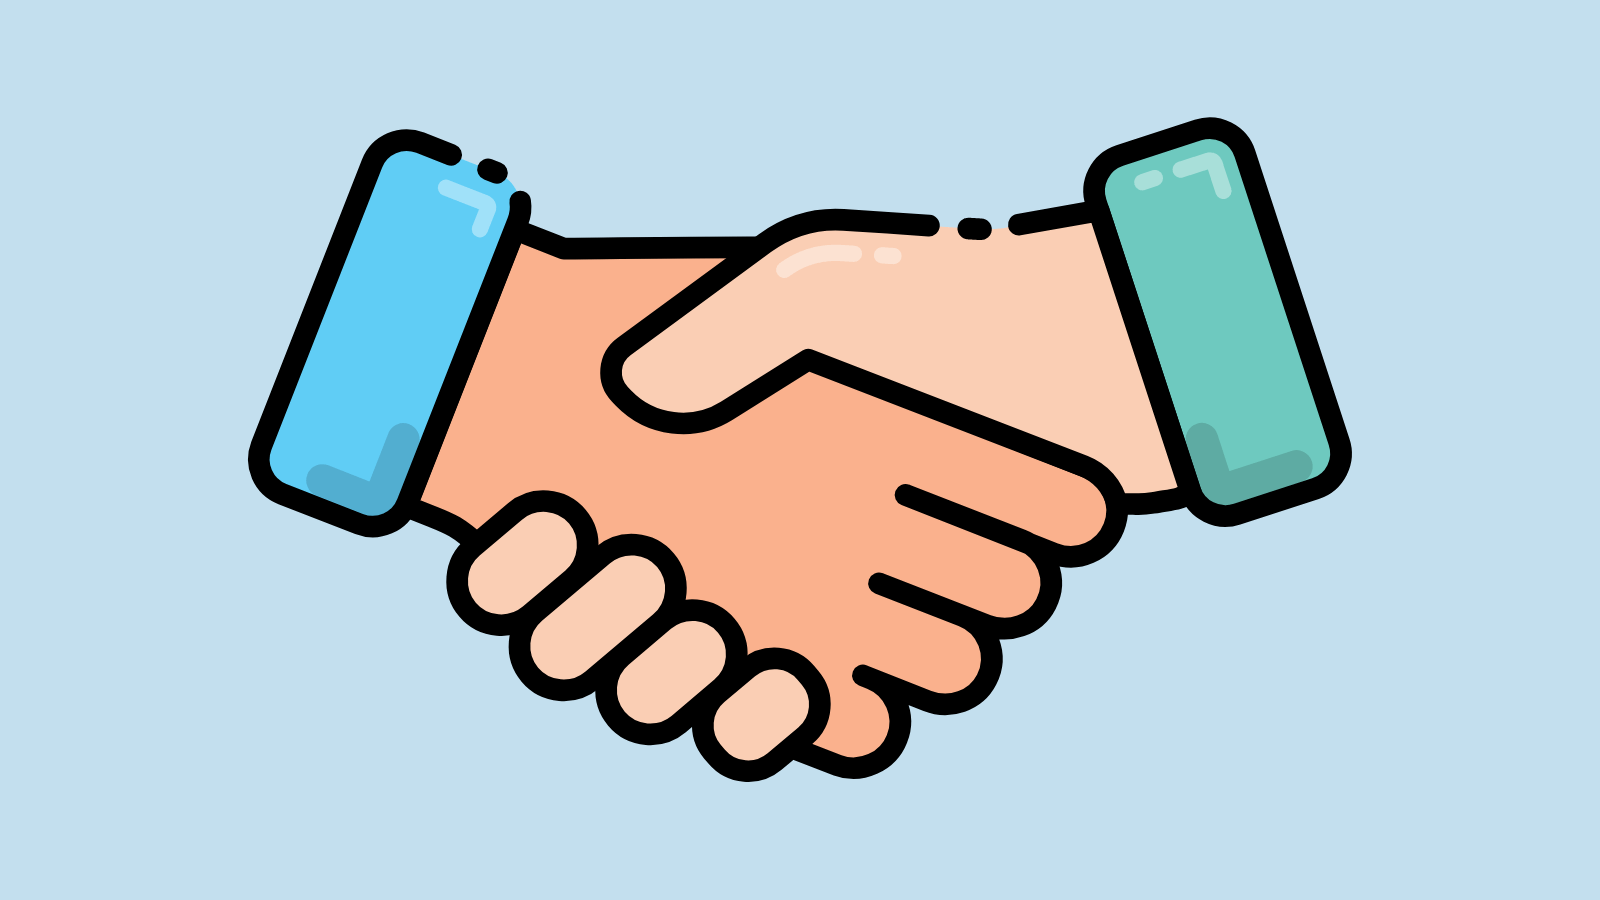 A closeup graphic of a handshake